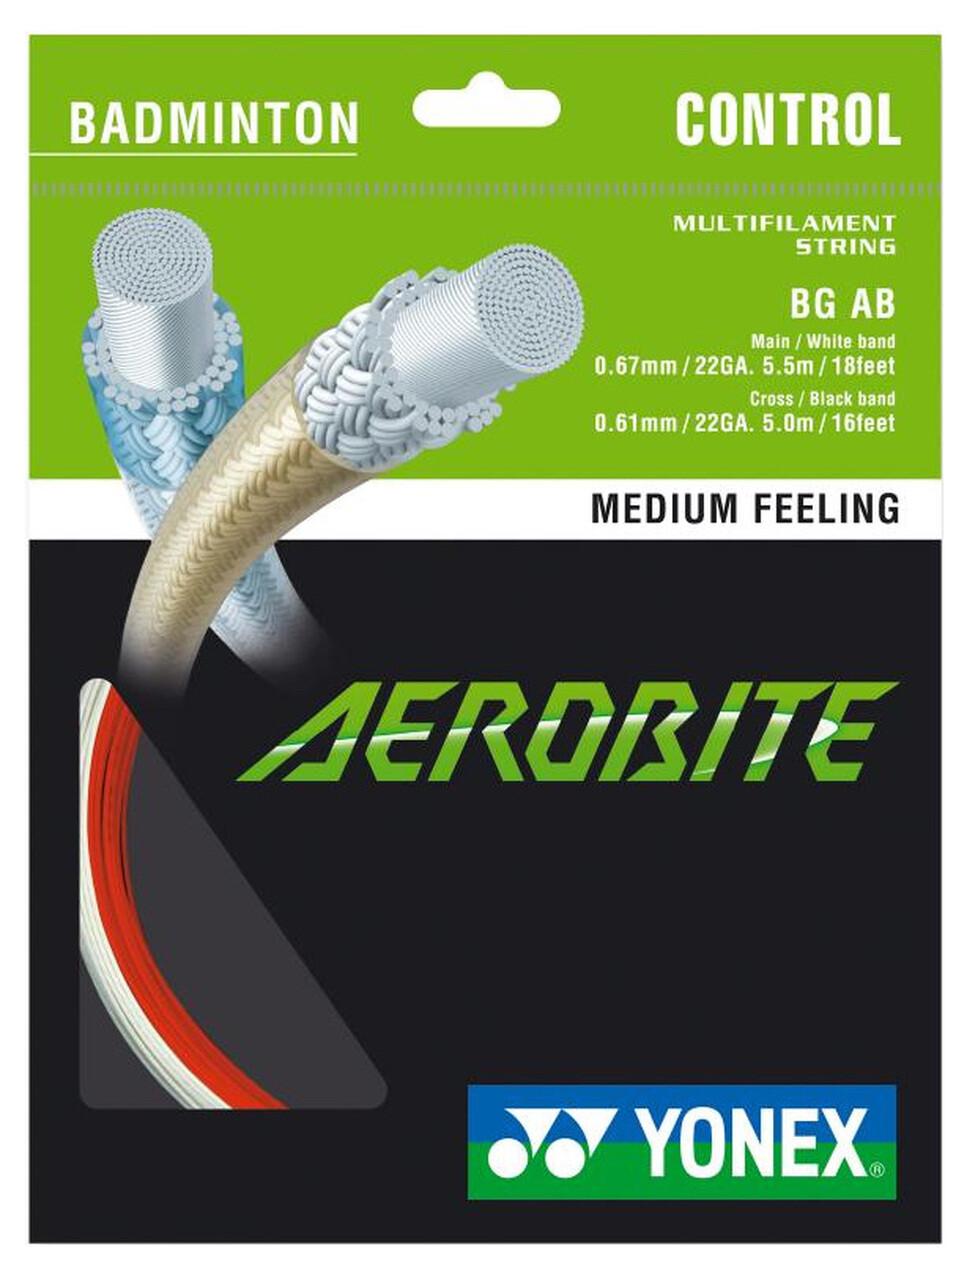 Yonex Aerobite Hybrid Badminton String Set - Red/White